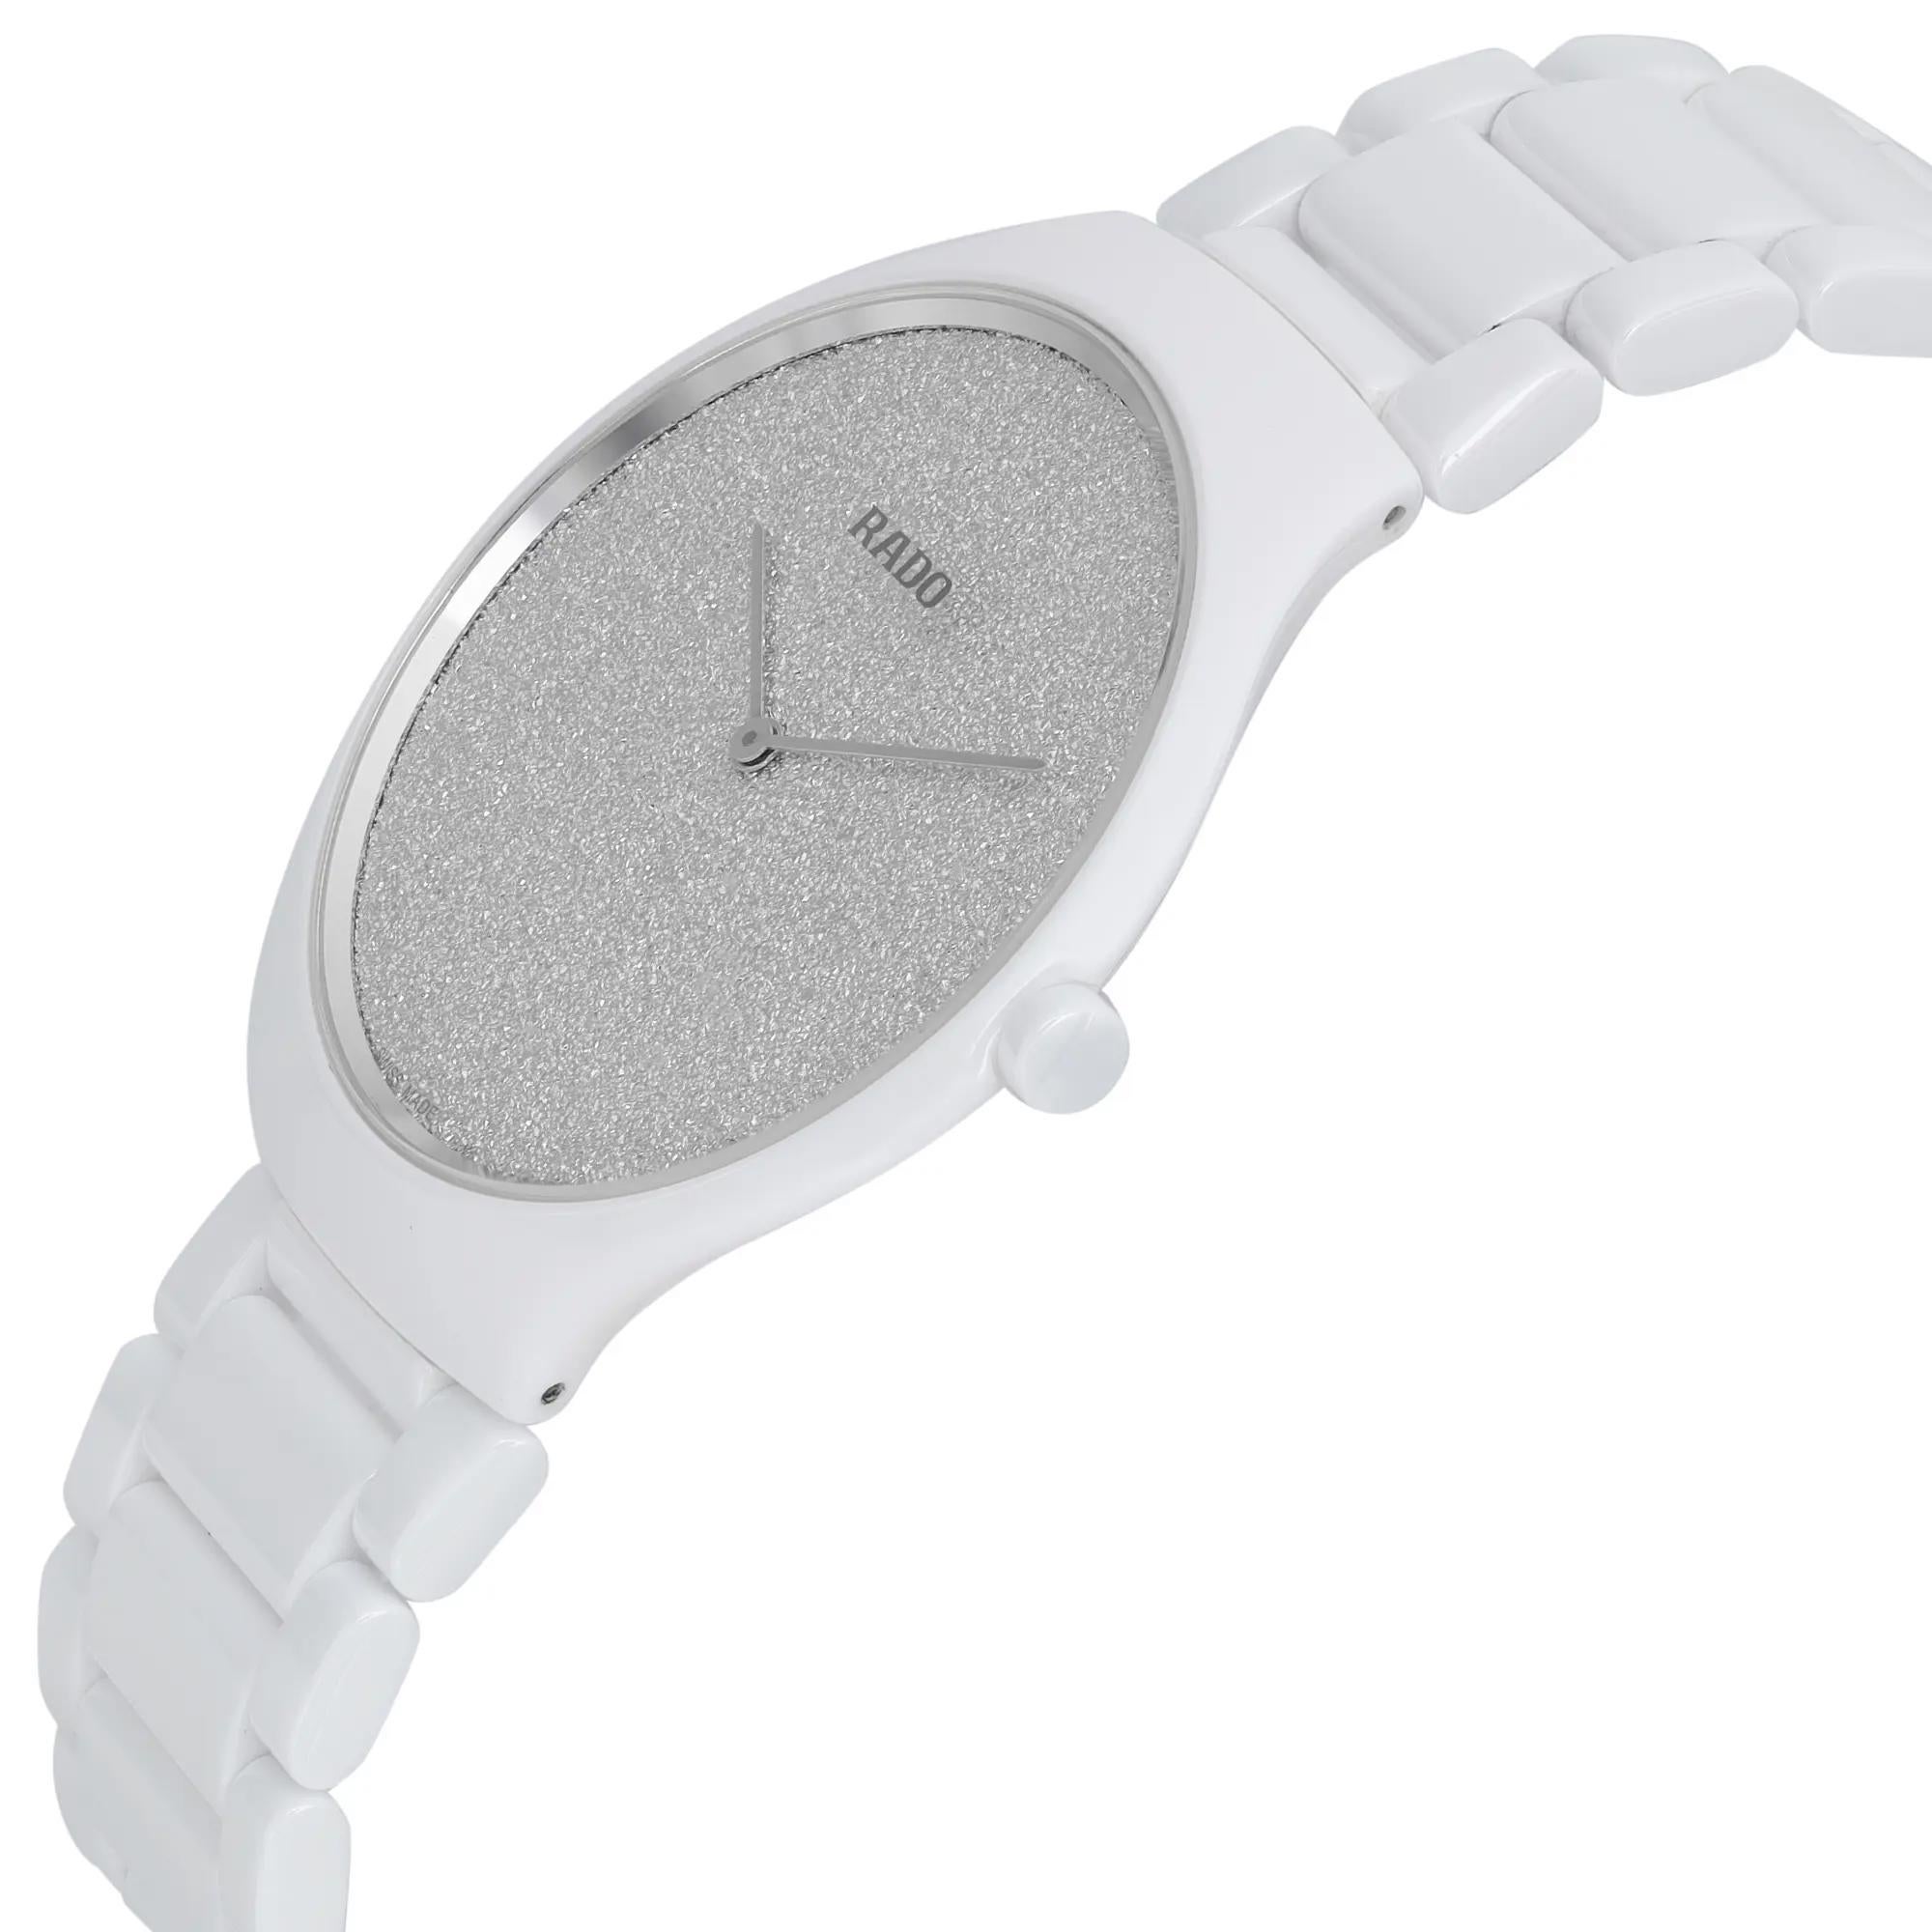 rado white ceramic watch price